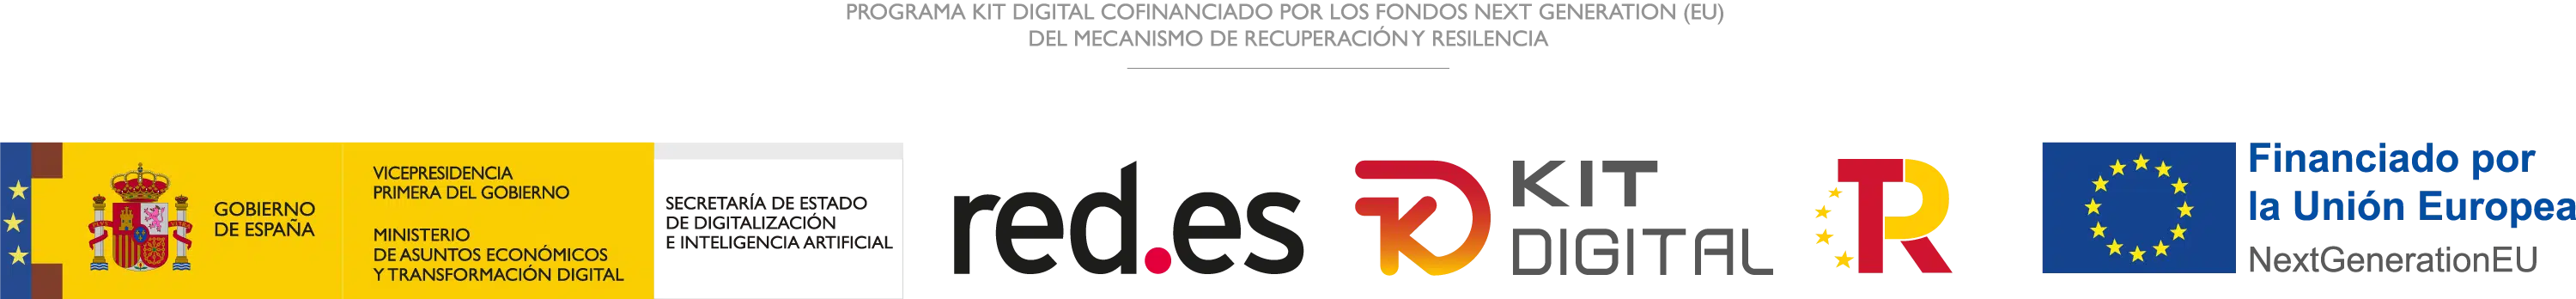 KIT DIGITAL Logo digitalizadores